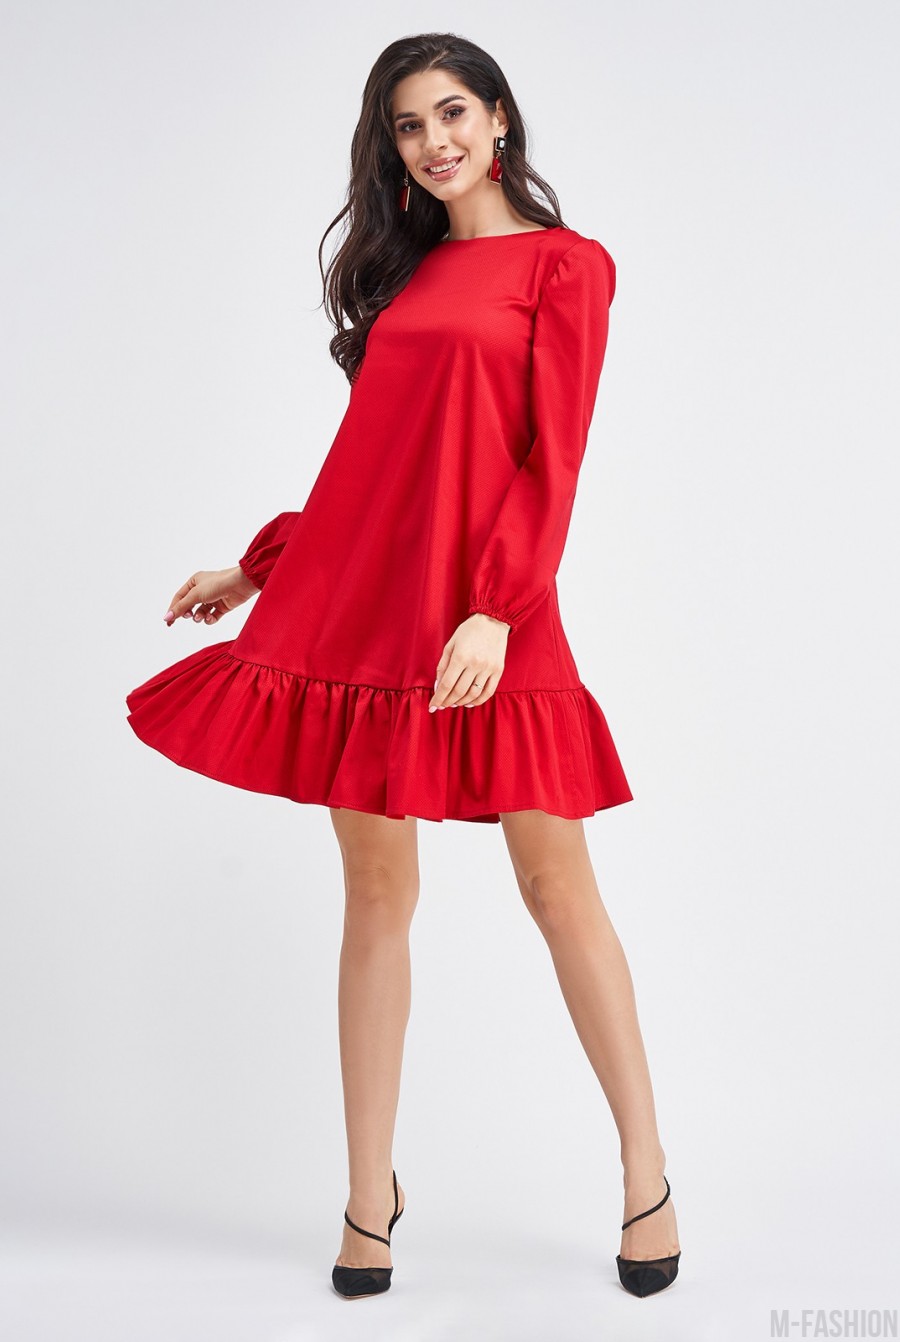 Яркое красное платье-трапеция слегка удлиненное сзади